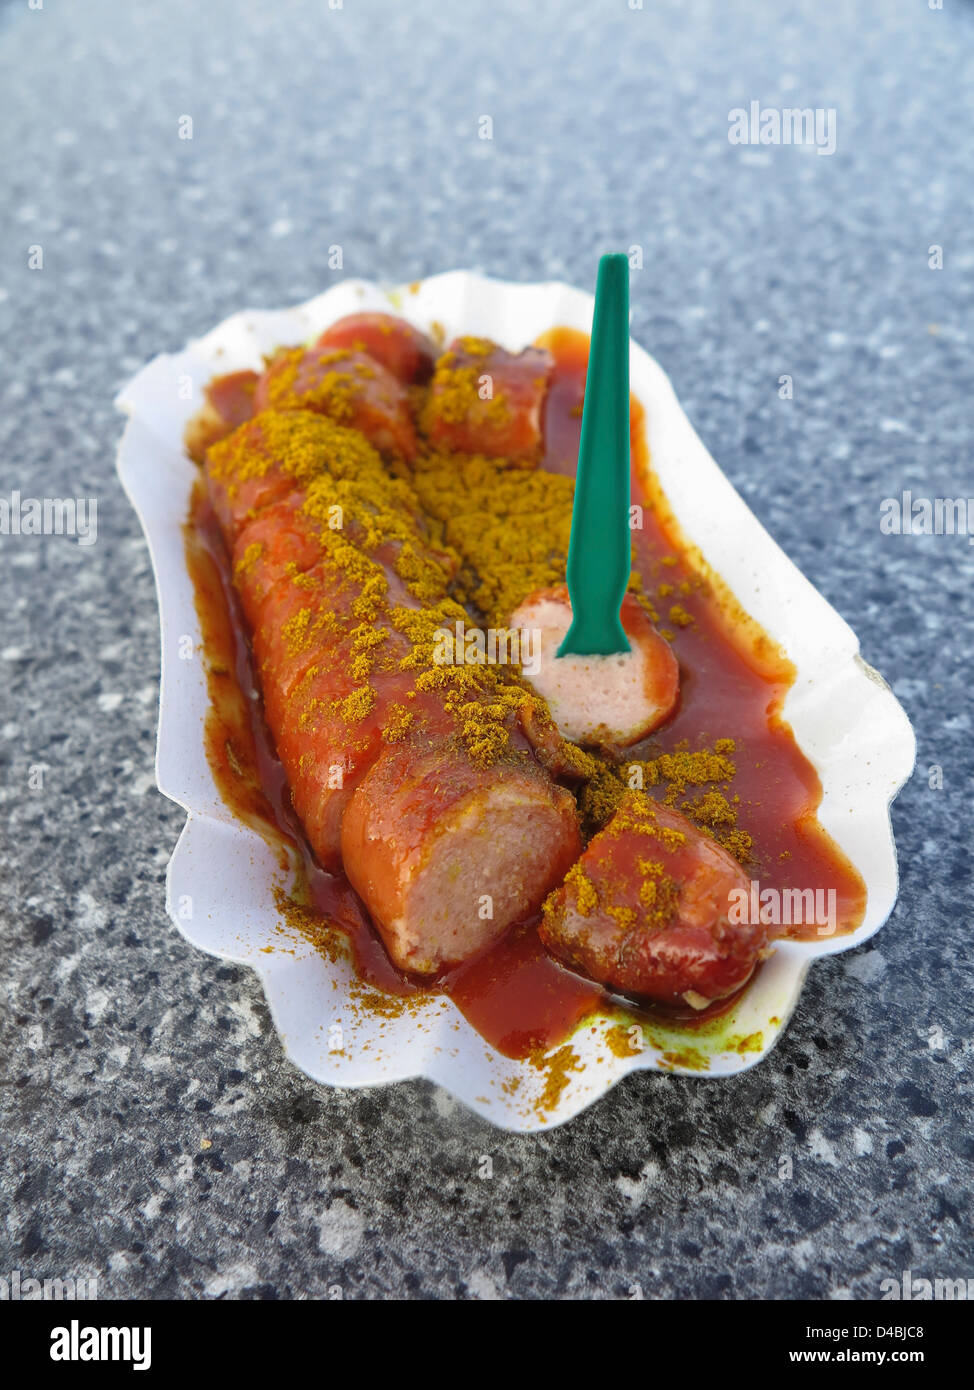 Currywurst - Allemand Bratwurst saucisses plat avec du ketchup et curry Banque D'Images